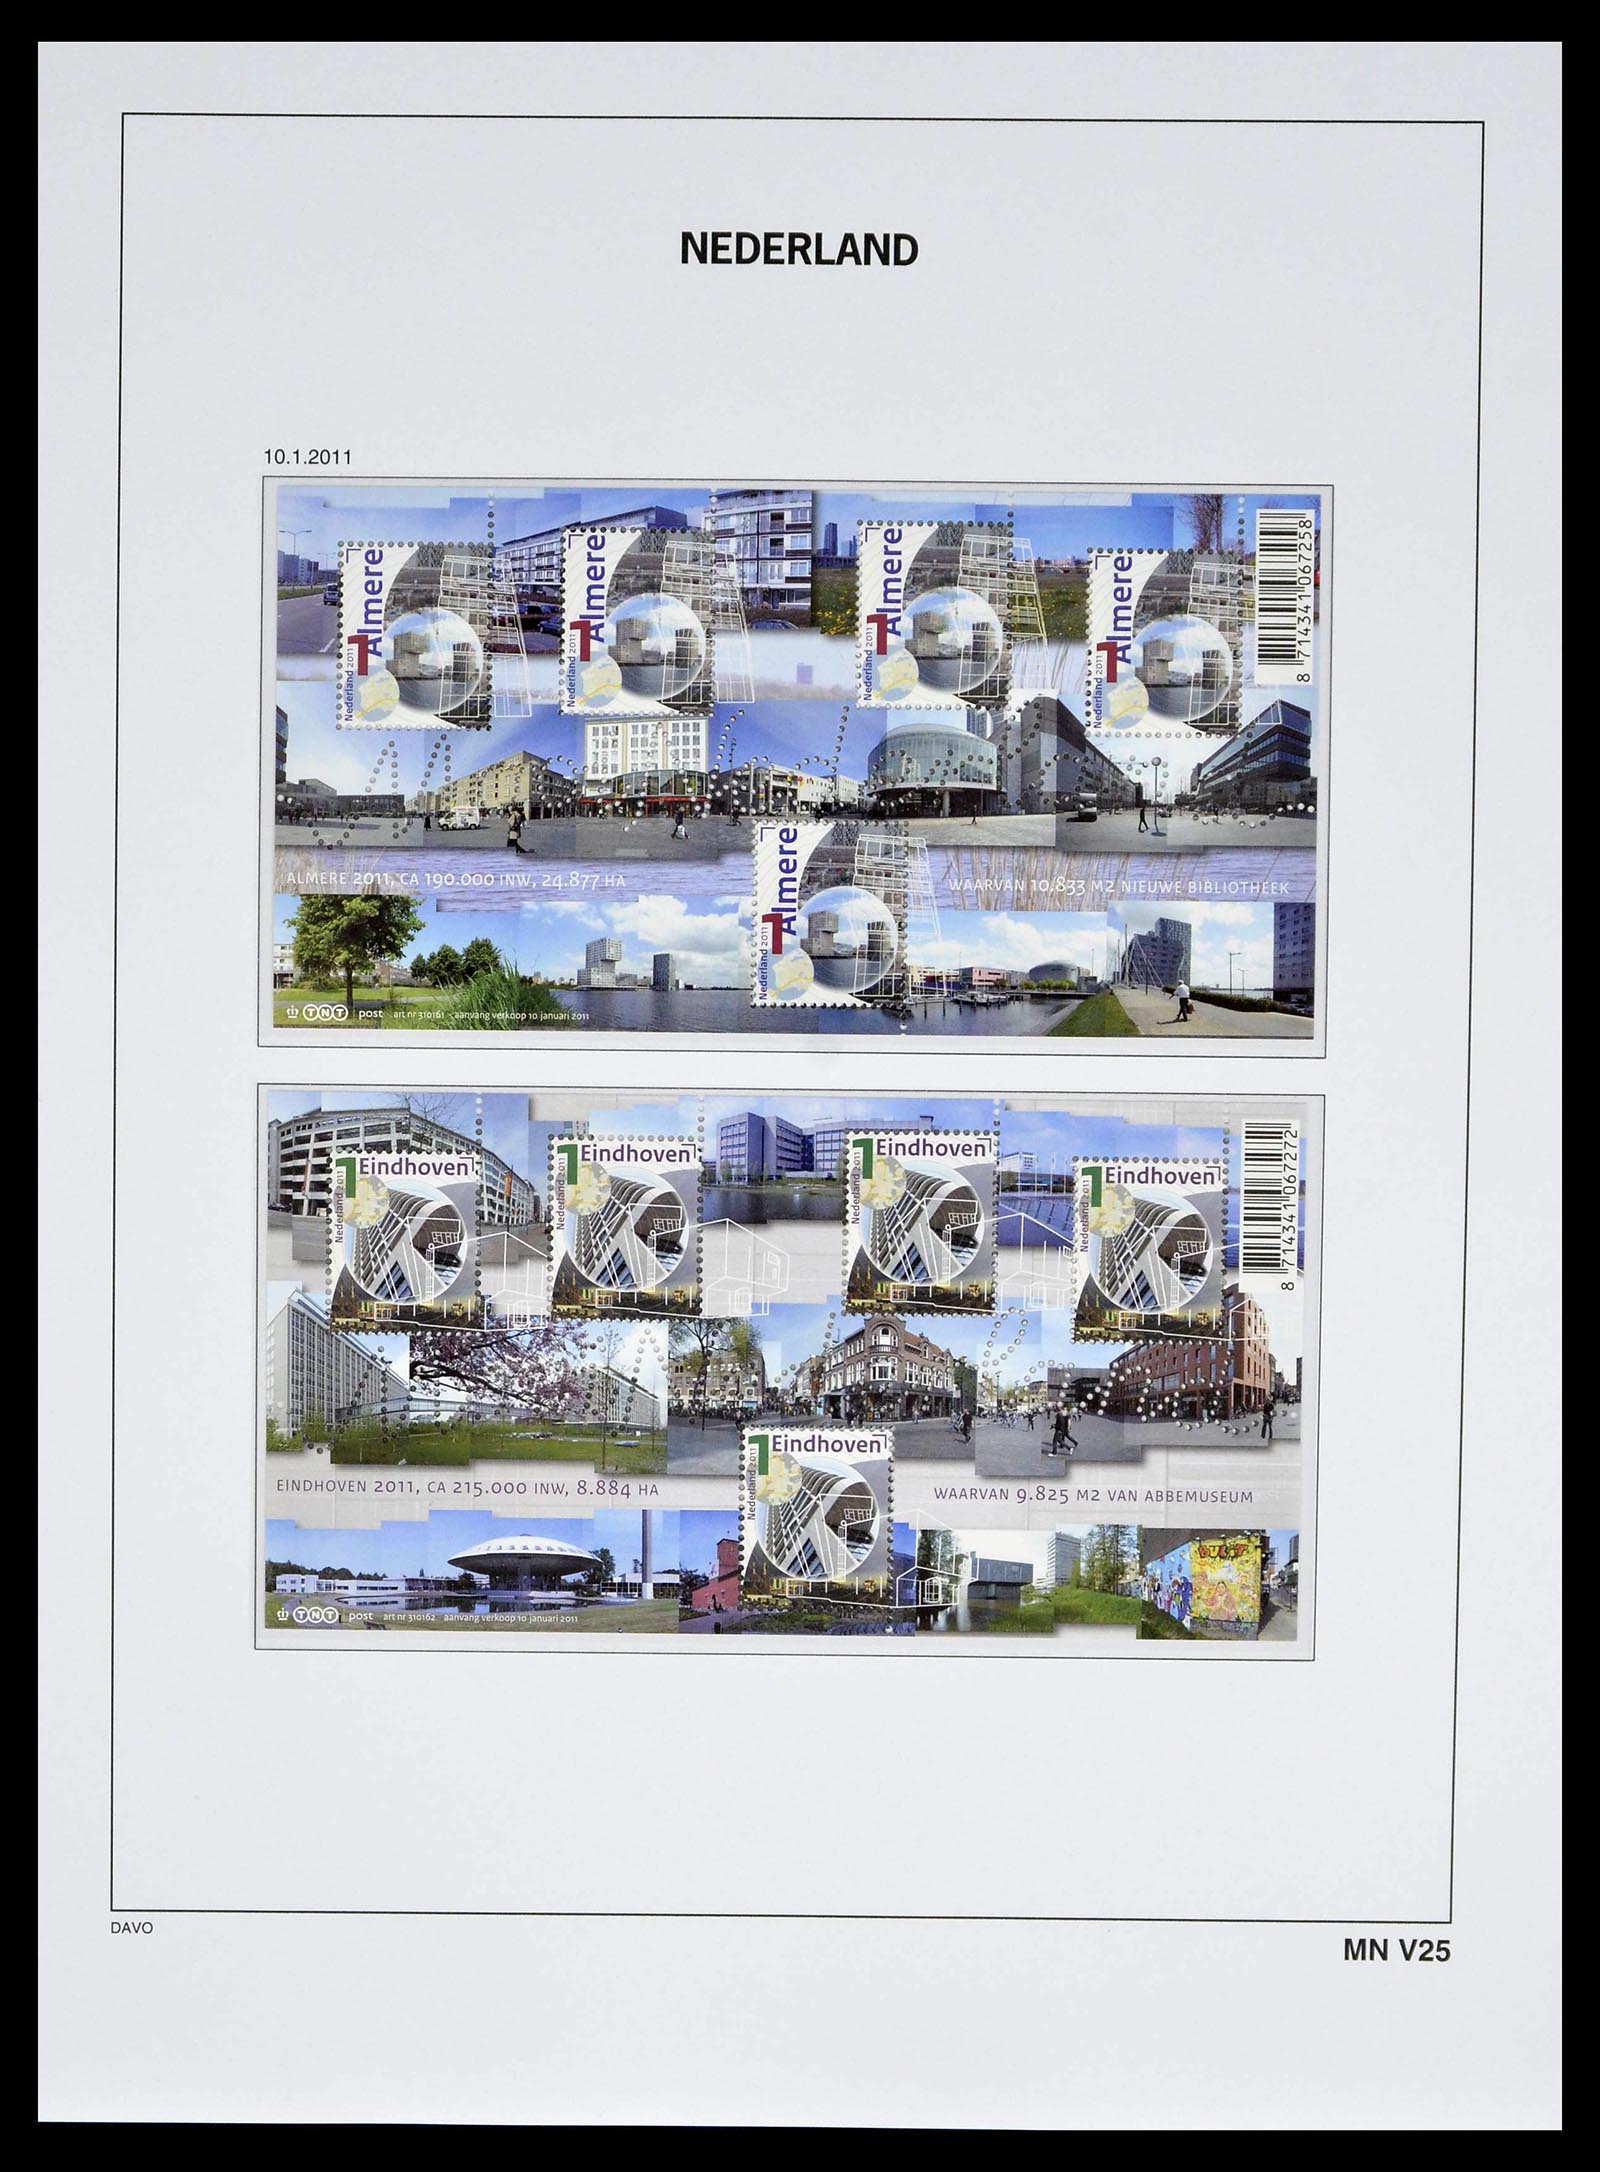 39134 0244 - Stamp collection 39134 Netherlands sheetlets 1992-2019!